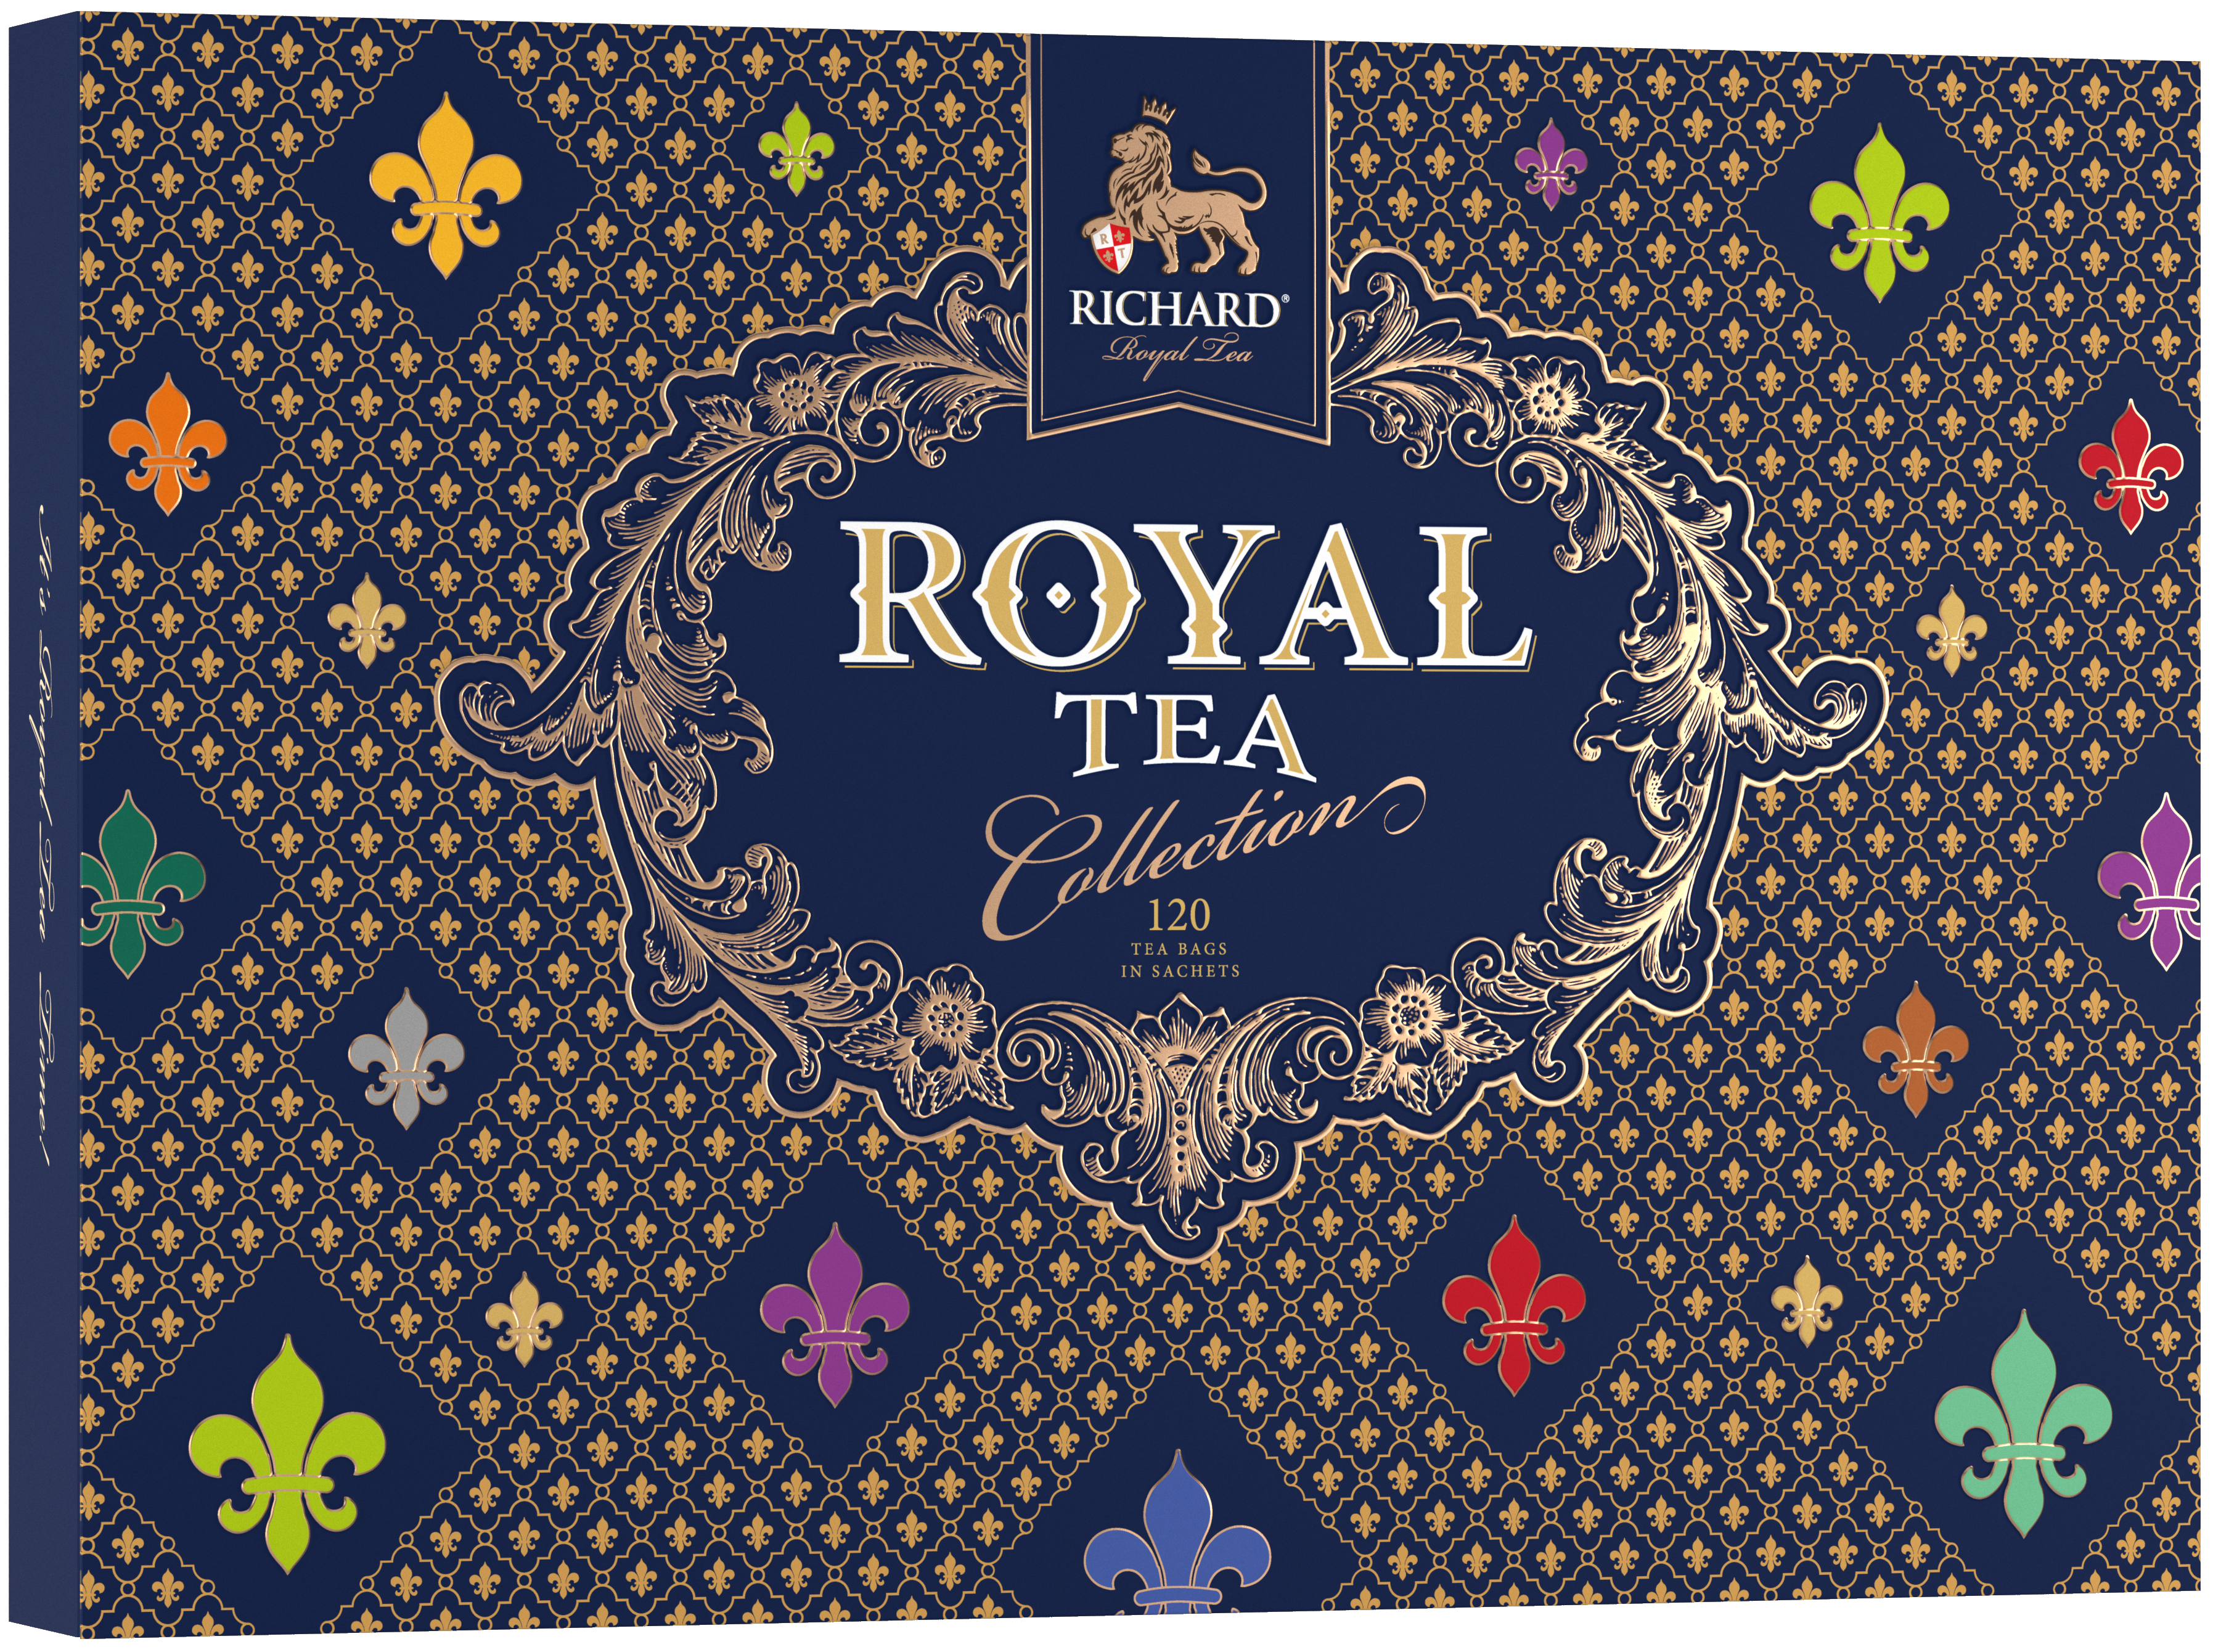 Richard Royal Tea Kollekció válogatás, 230,4g Richard Tea